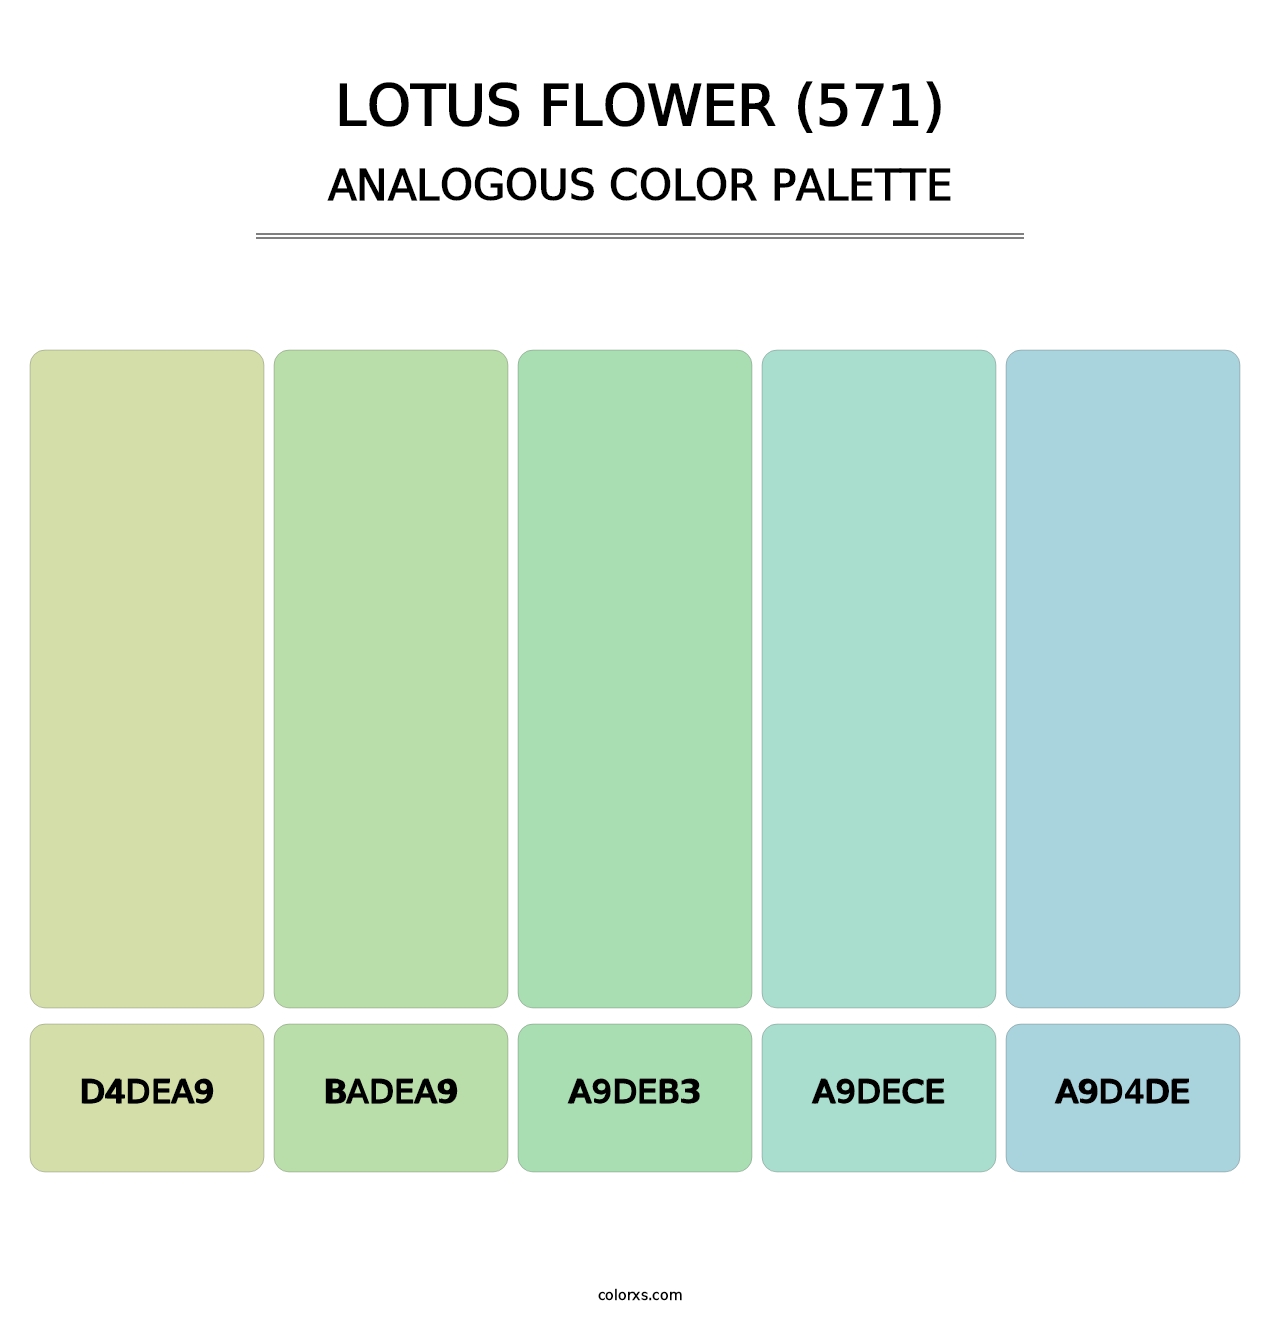 Lotus Flower (571) - Analogous Color Palette